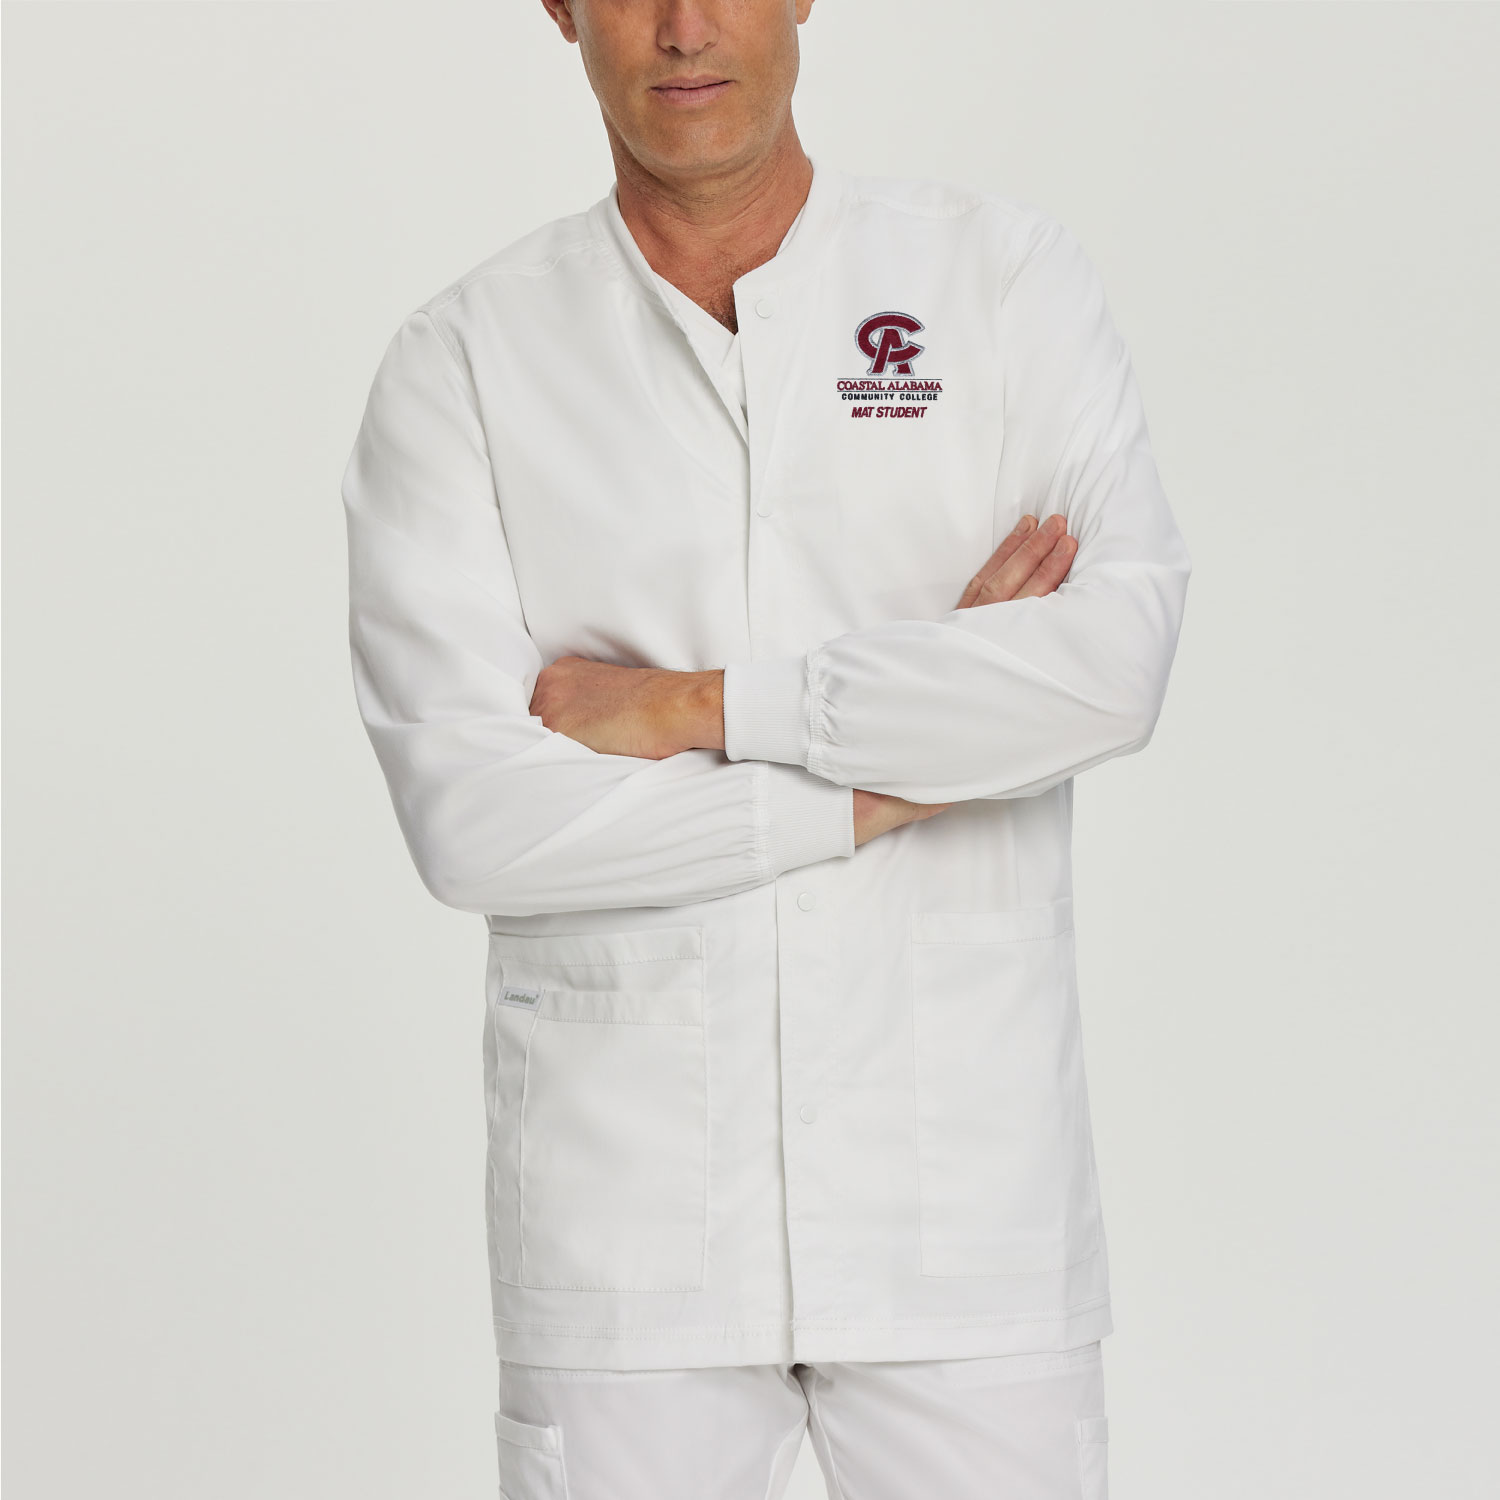 Men's Med Assistant White Warm-up Coat